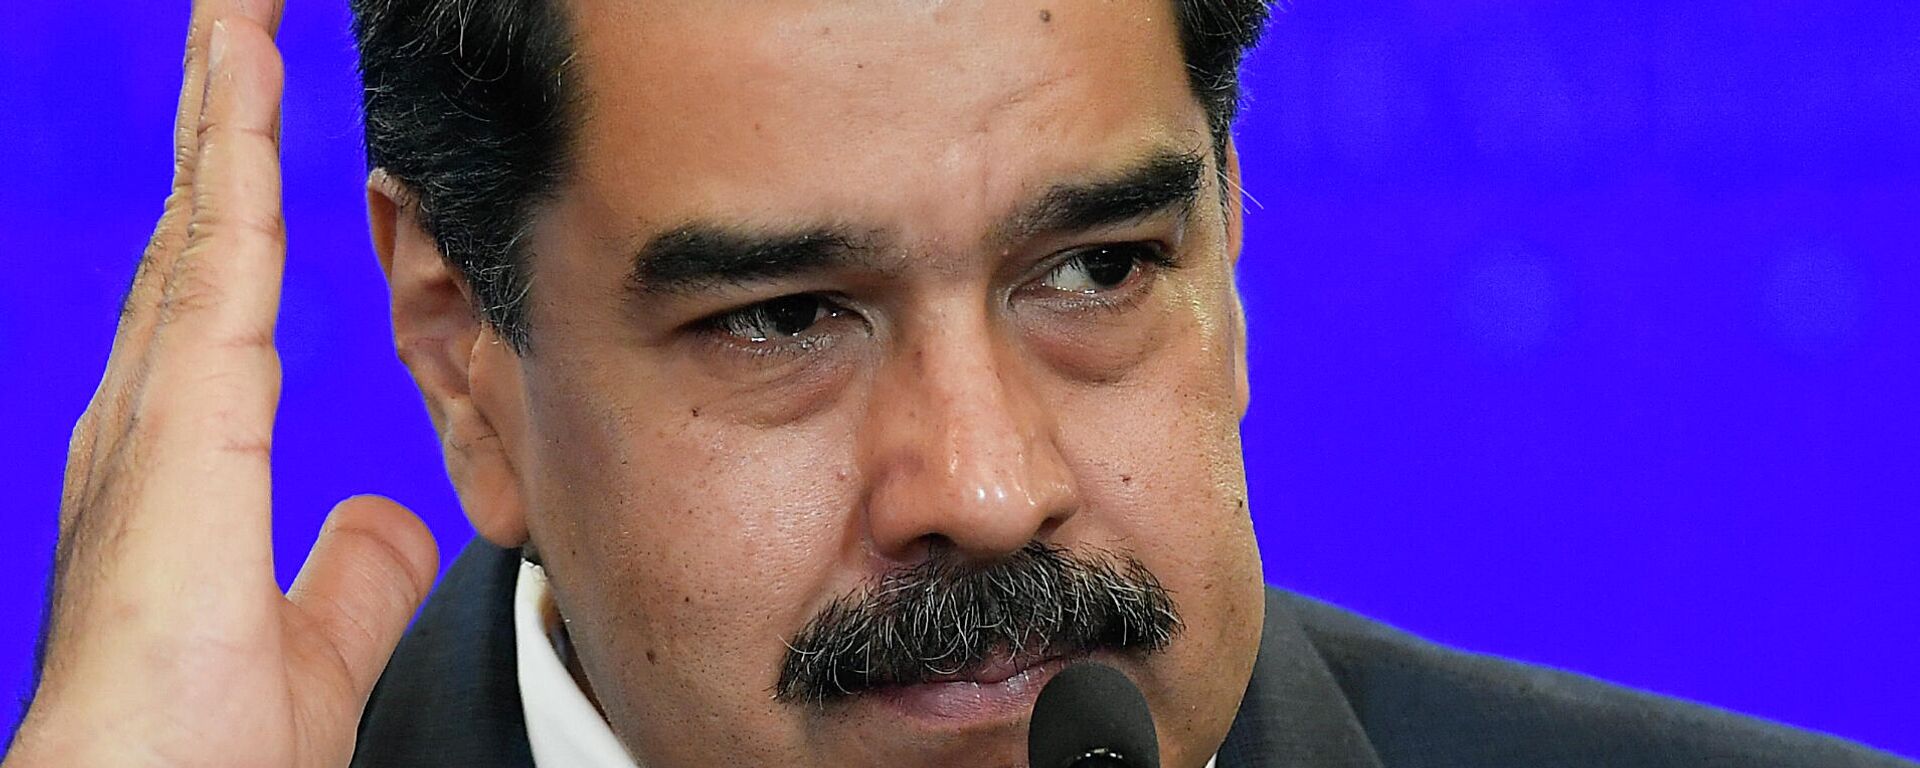 Nicolás Maduro, presidente de Venezuela - Sputnik Mundo, 1920, 20.08.2021